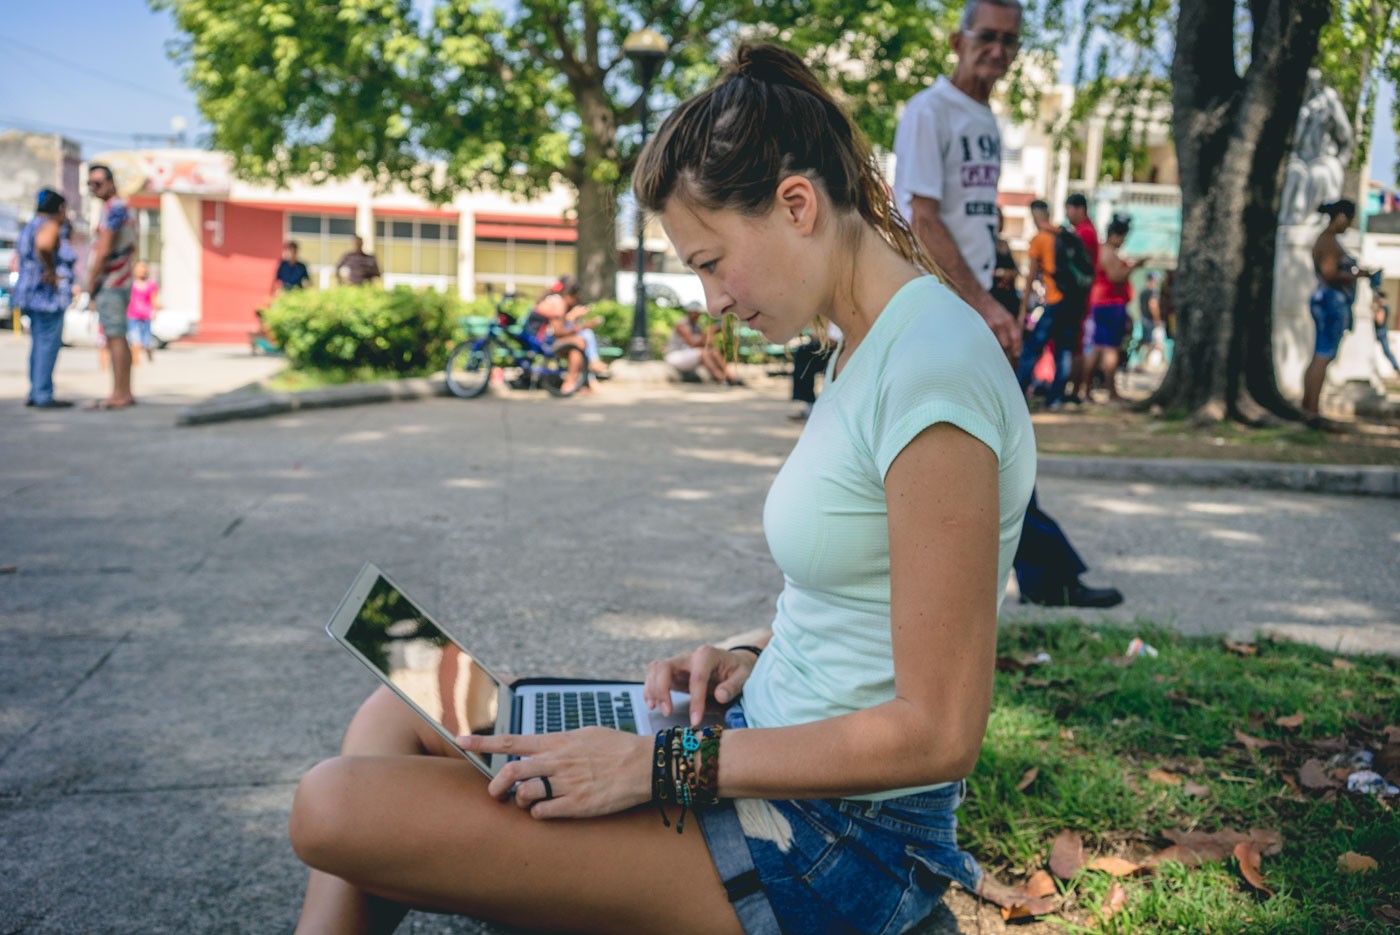 Wifi in Cuba: Oksana getting her wifi fix in Cienfuegos, Cuba